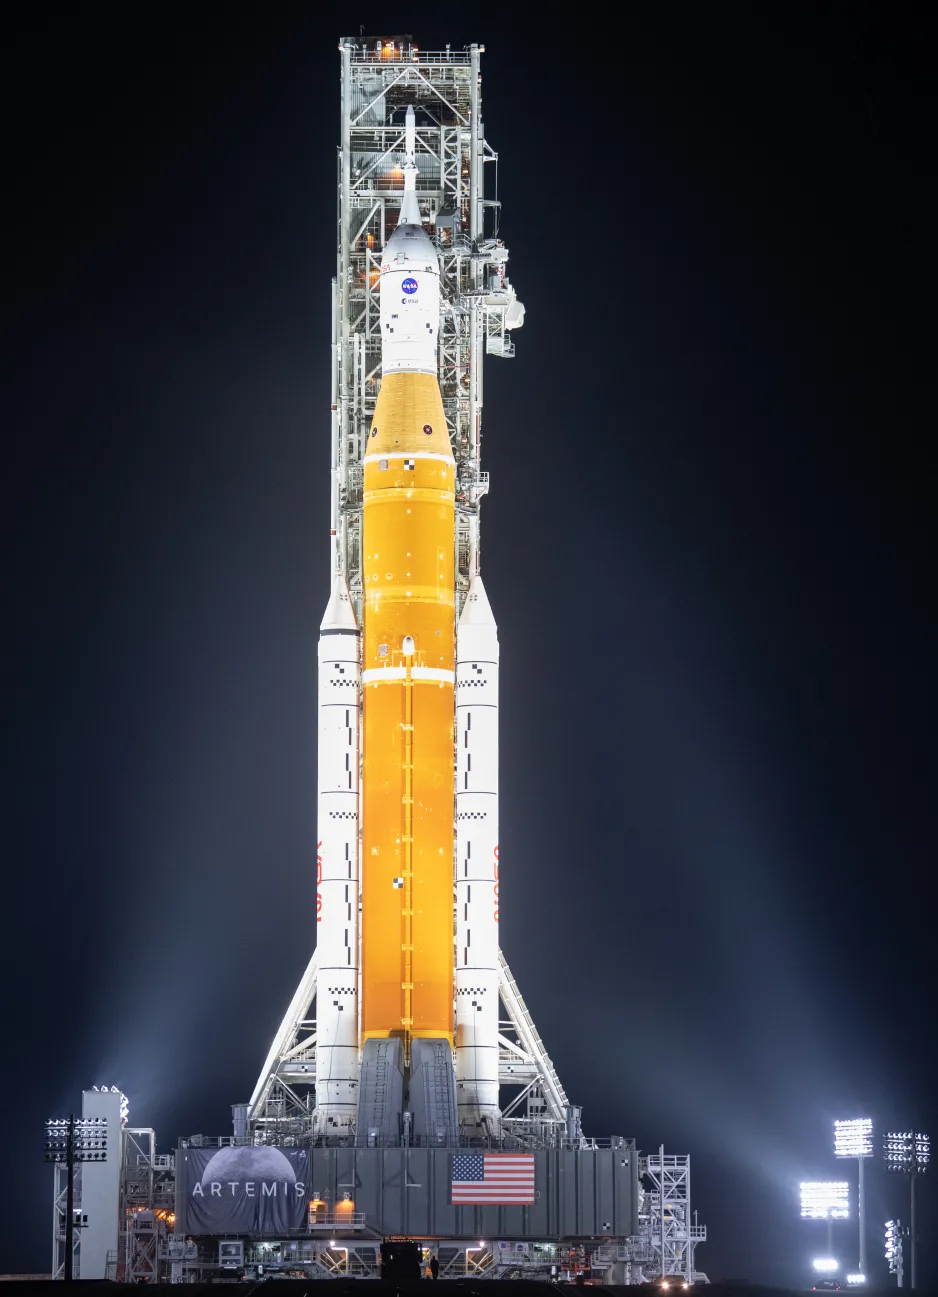 Un énorme noyau de fusée orange en position verticale entre deux propulseurs de fusée sur un véhicule de lancement mobile, éclairé par des projecteurs sur un fond noir